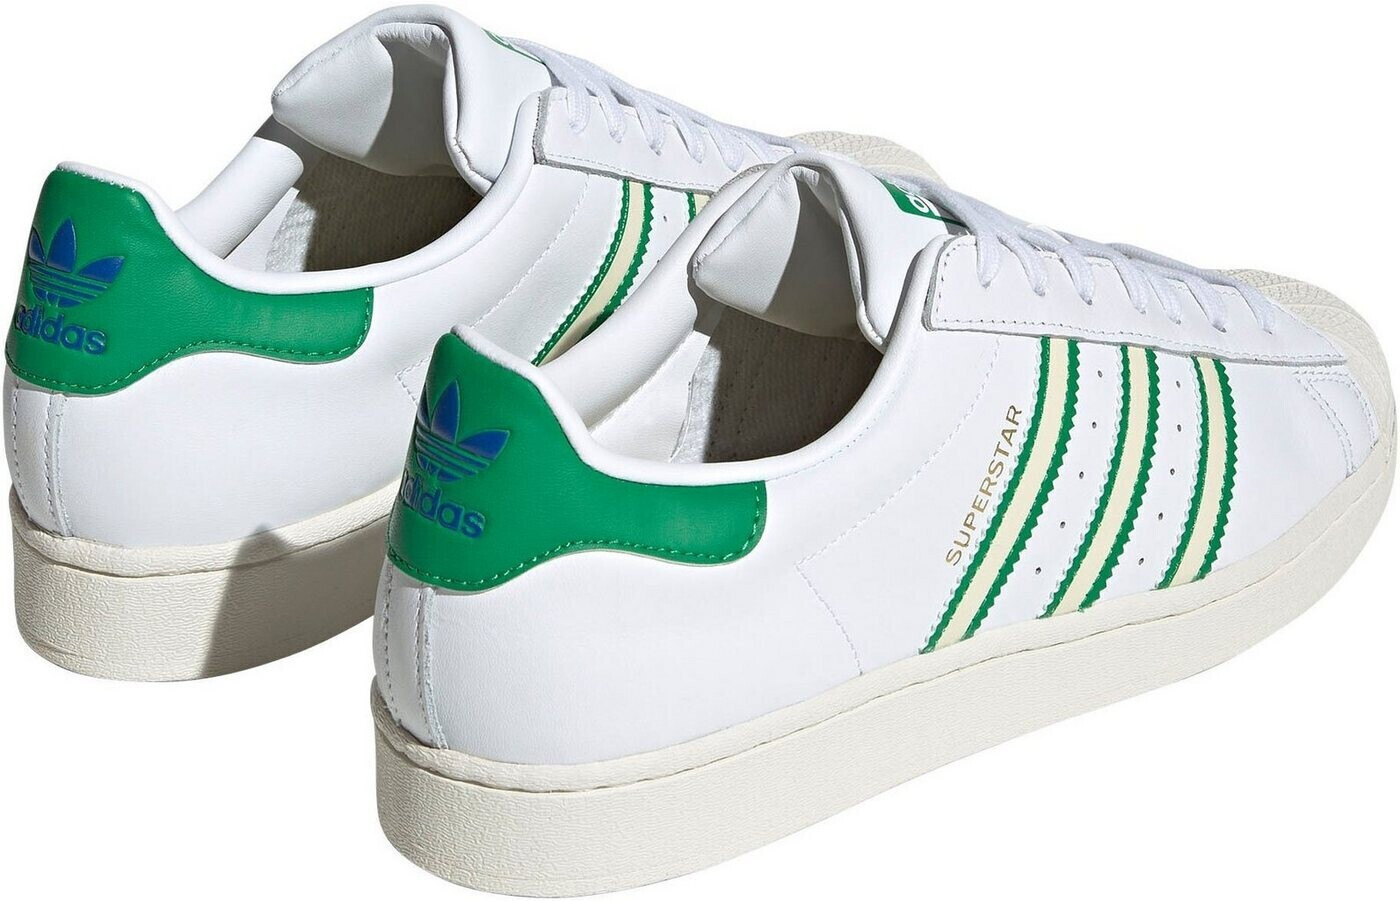 Adidas Superstar white/off 71,19 bei Preisvergleich € ftwr | white/green ab